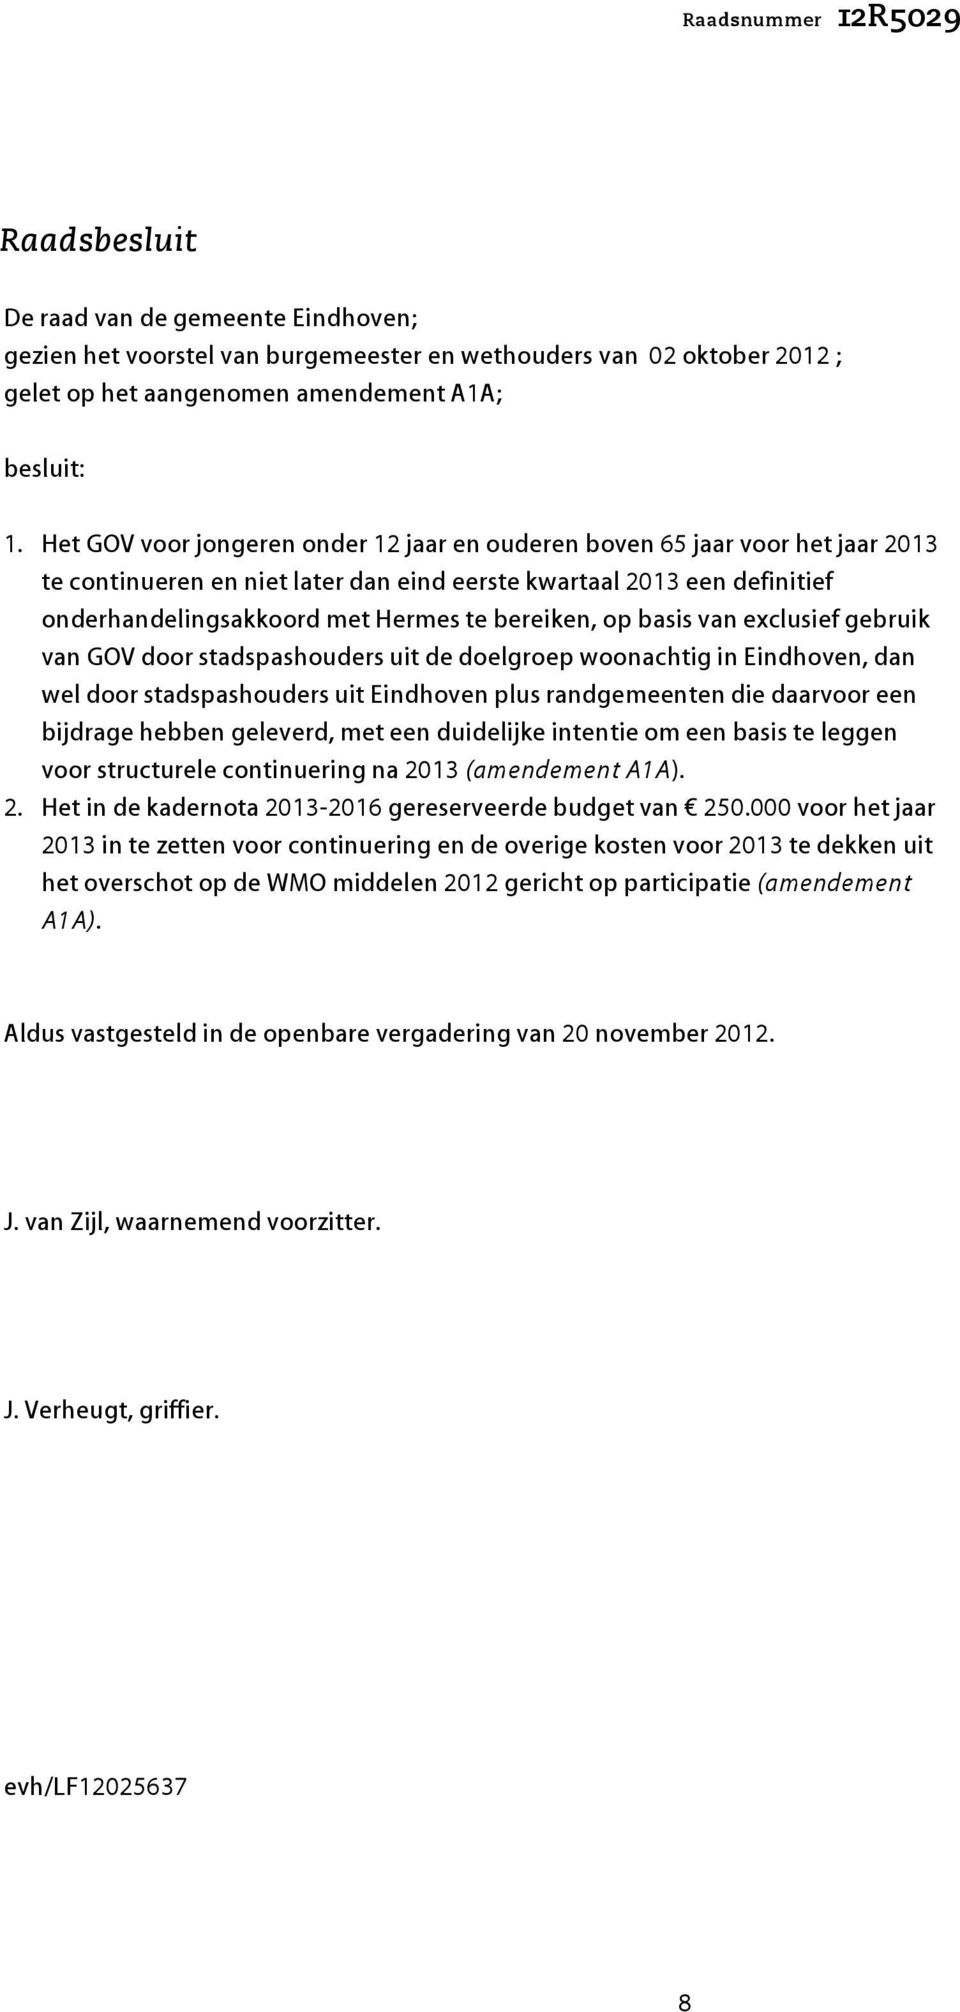 bereiken, op basis van exclusief gebruik van GOV door stadspashouders uit de doelgroep woonachtig in Eindhoven, dan wel door stadspashouders uit Eindhoven plus randgemeenten die daarvoor een bijdrage